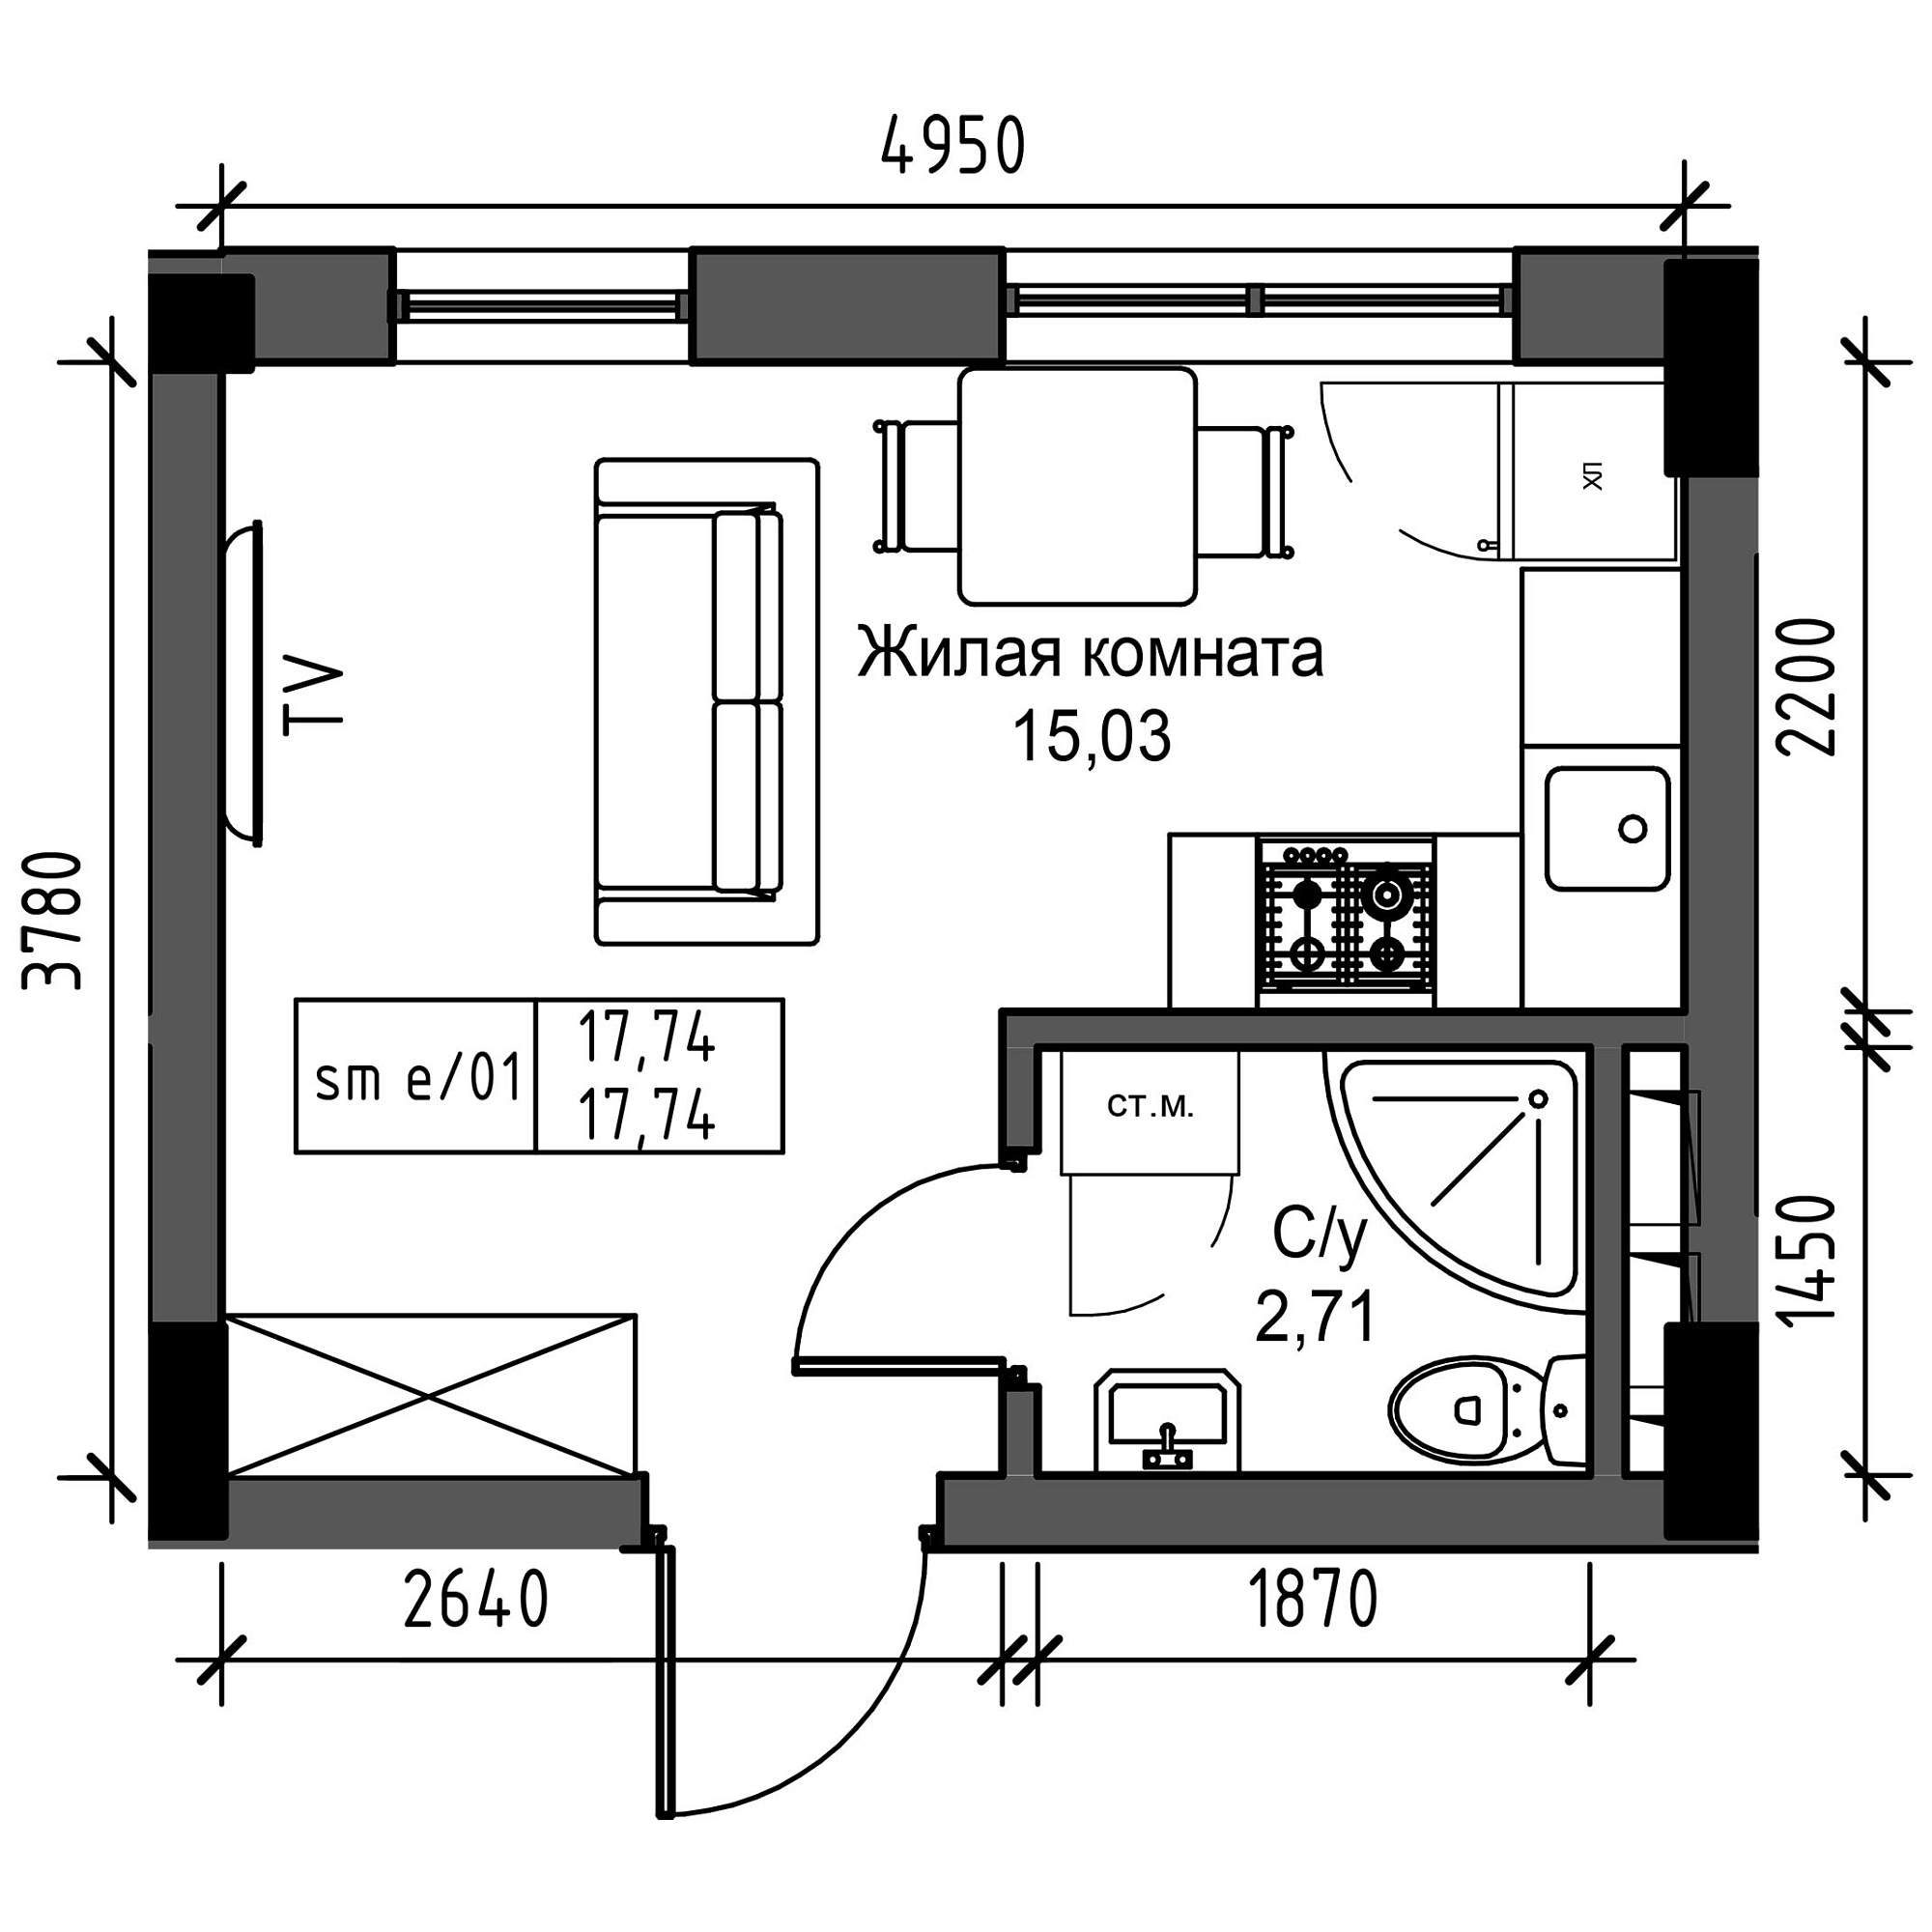 Планировка Smart-квартира площей 17.74м2, UM-003-05/0048.